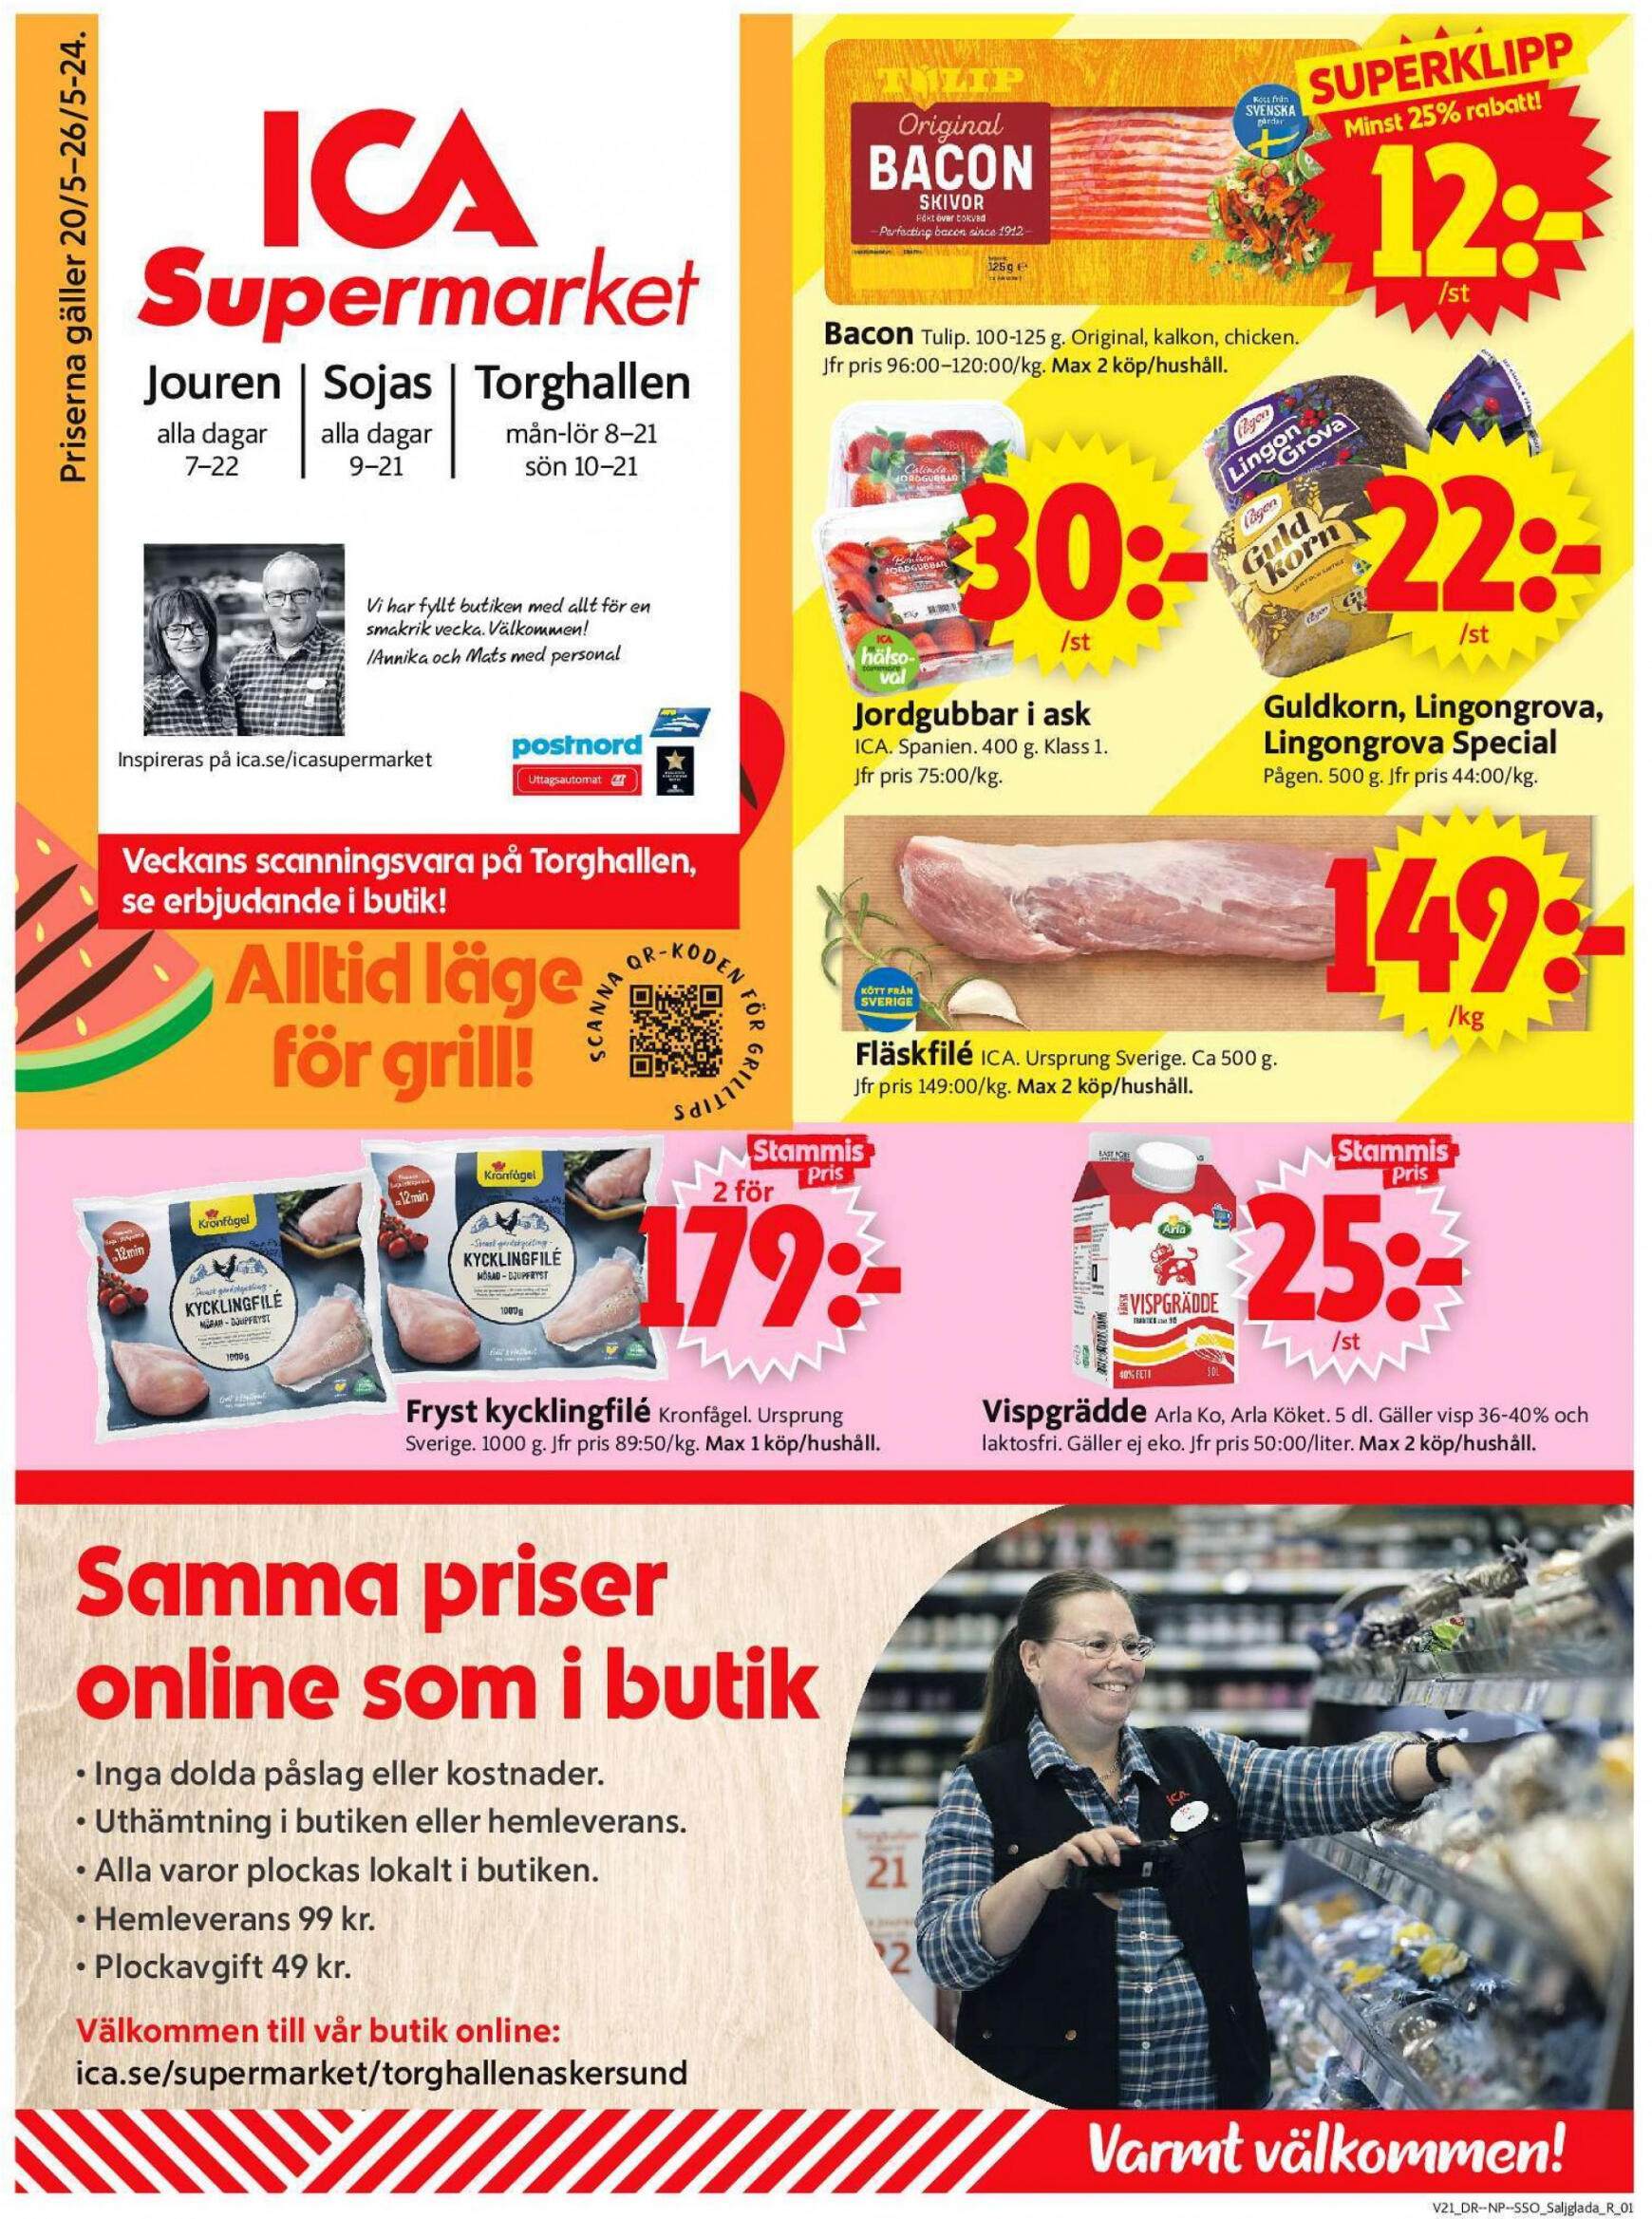 ica-supermarket - Flyer ICA Supermarket current 20.05. - 26.05. - page: 1